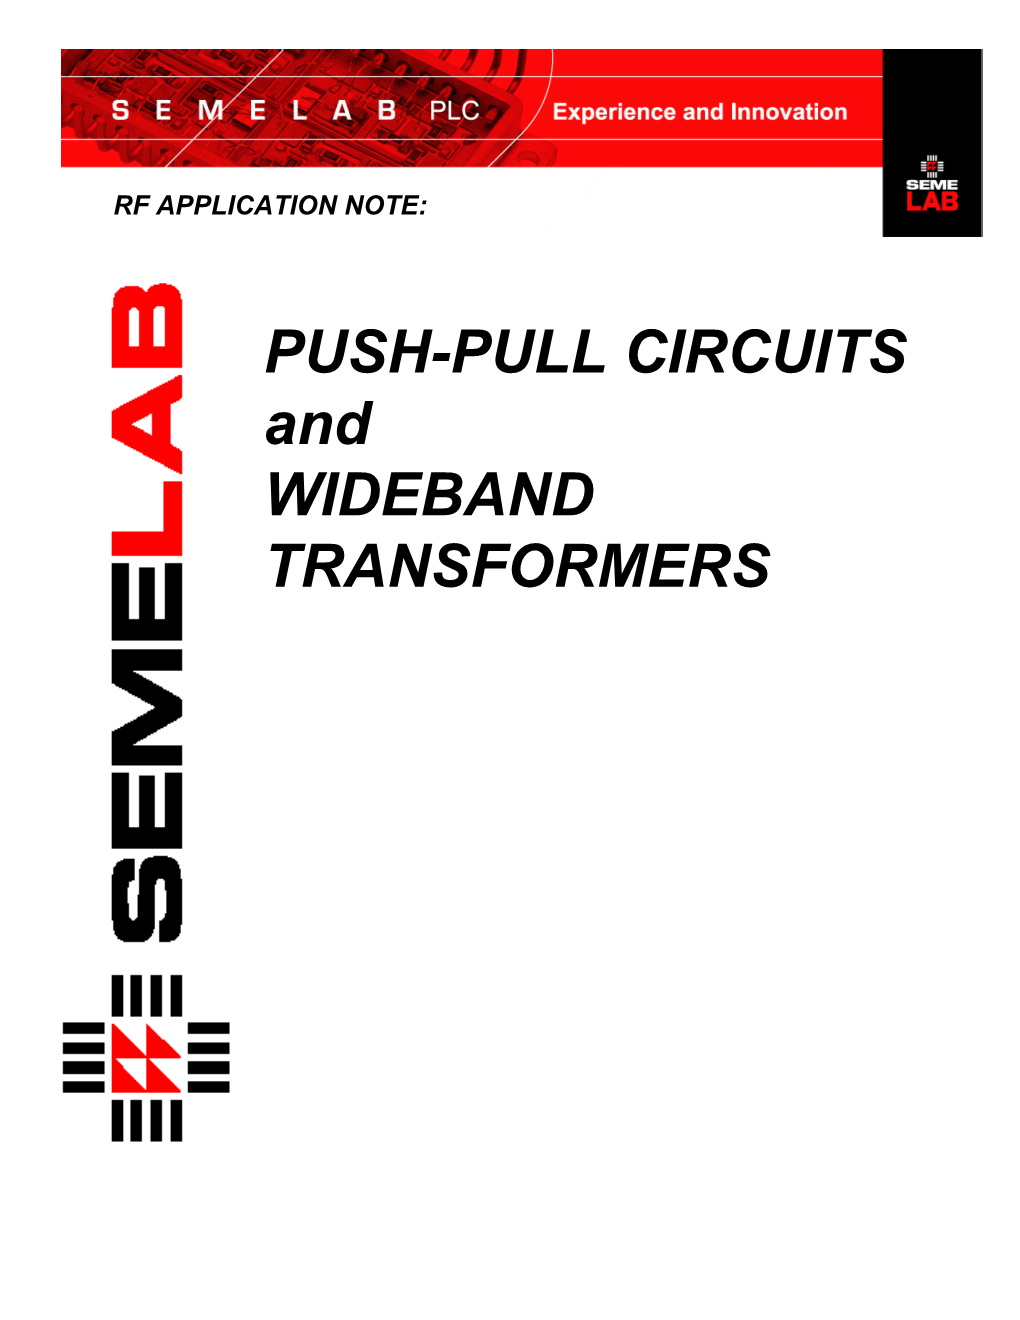 PUSH-PULL CIRCUITS and WIDEBAND TRANSFORMERS Push-Pull Transistors